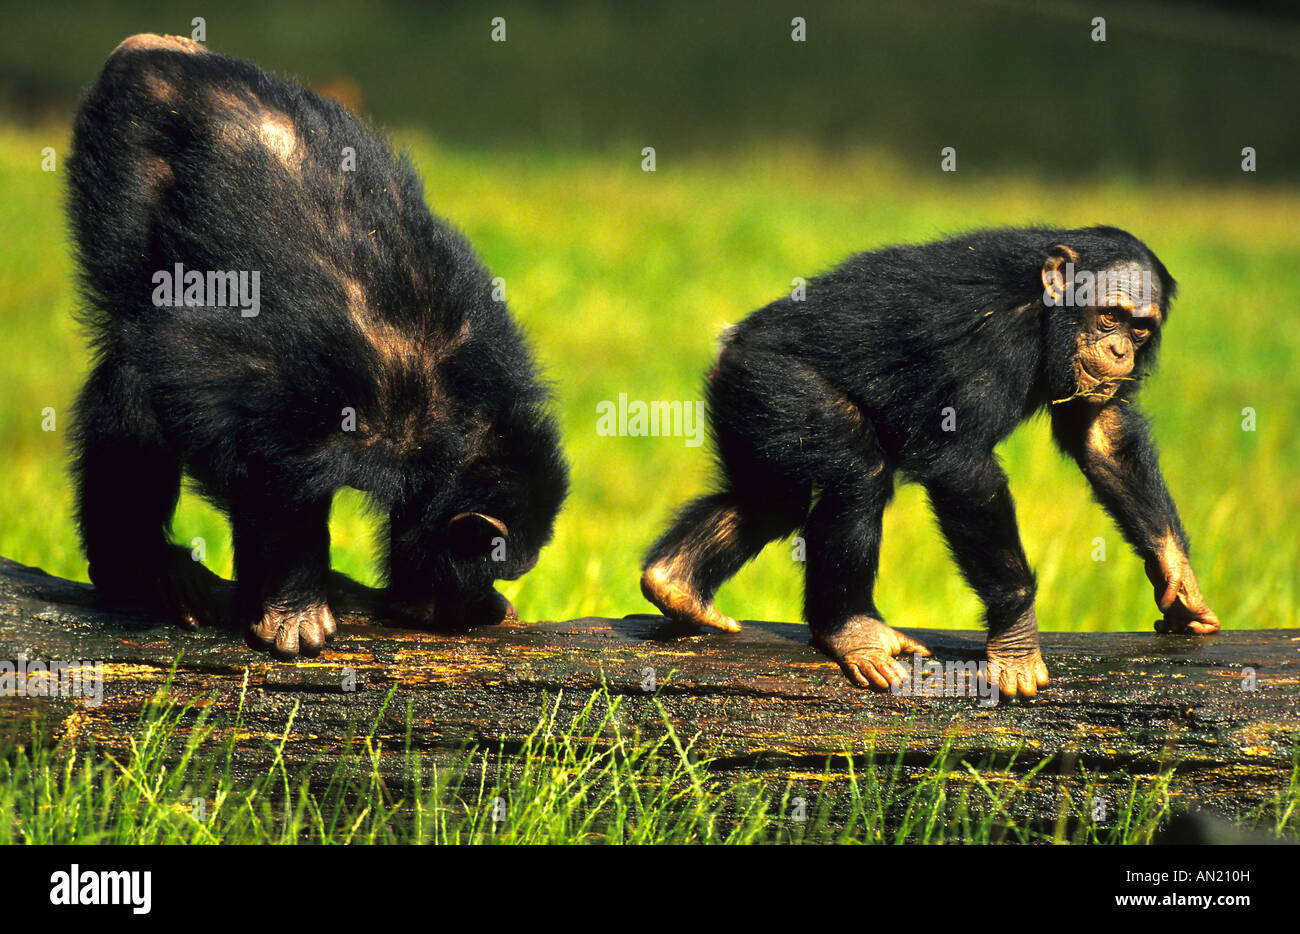 Schimpanse Chimpanzee Pan troglodytes Stock Photo